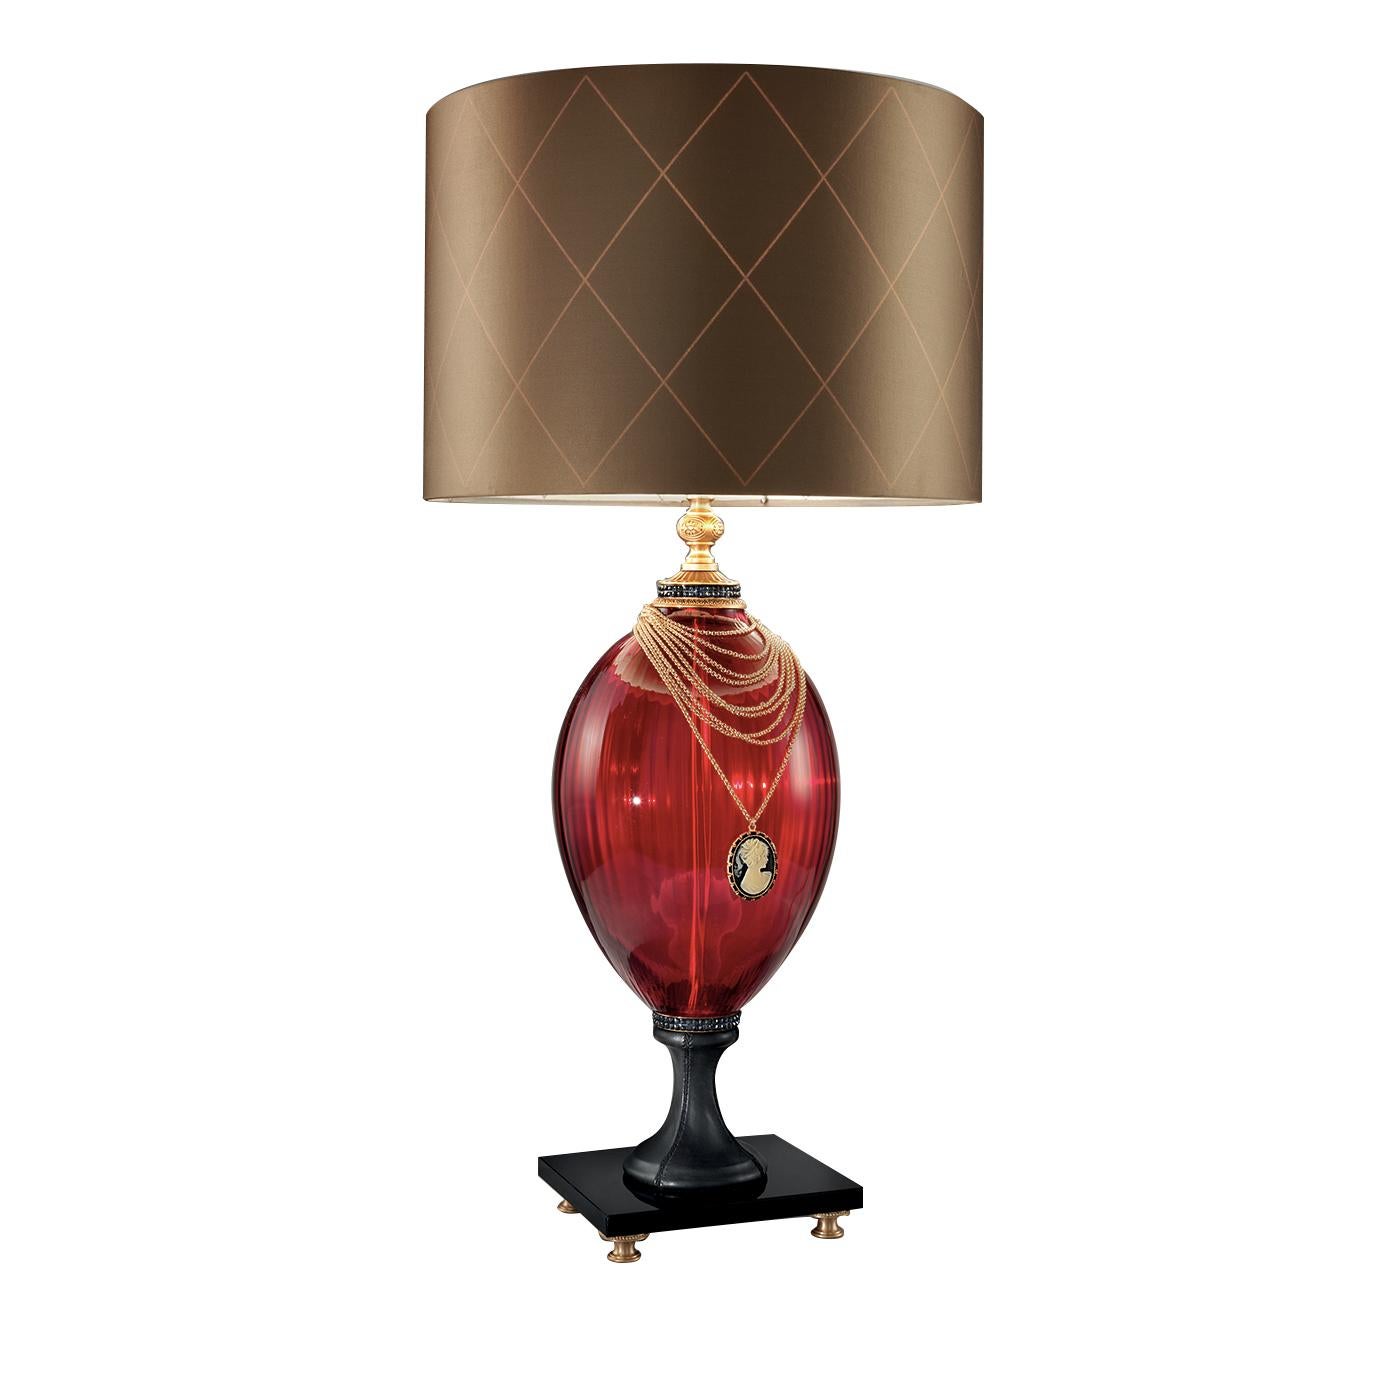 Diese atemberaubende Lampe verbindet zeitlosen Stil mit einem Vintage-Charme und ist ein wahres Meisterwerk. Diese elegante Lampe hat eine Silhouette aus rubinfarbenem Glas und eine schillernde 24-karätige vergoldete dekorative Halskette mit Kamee.